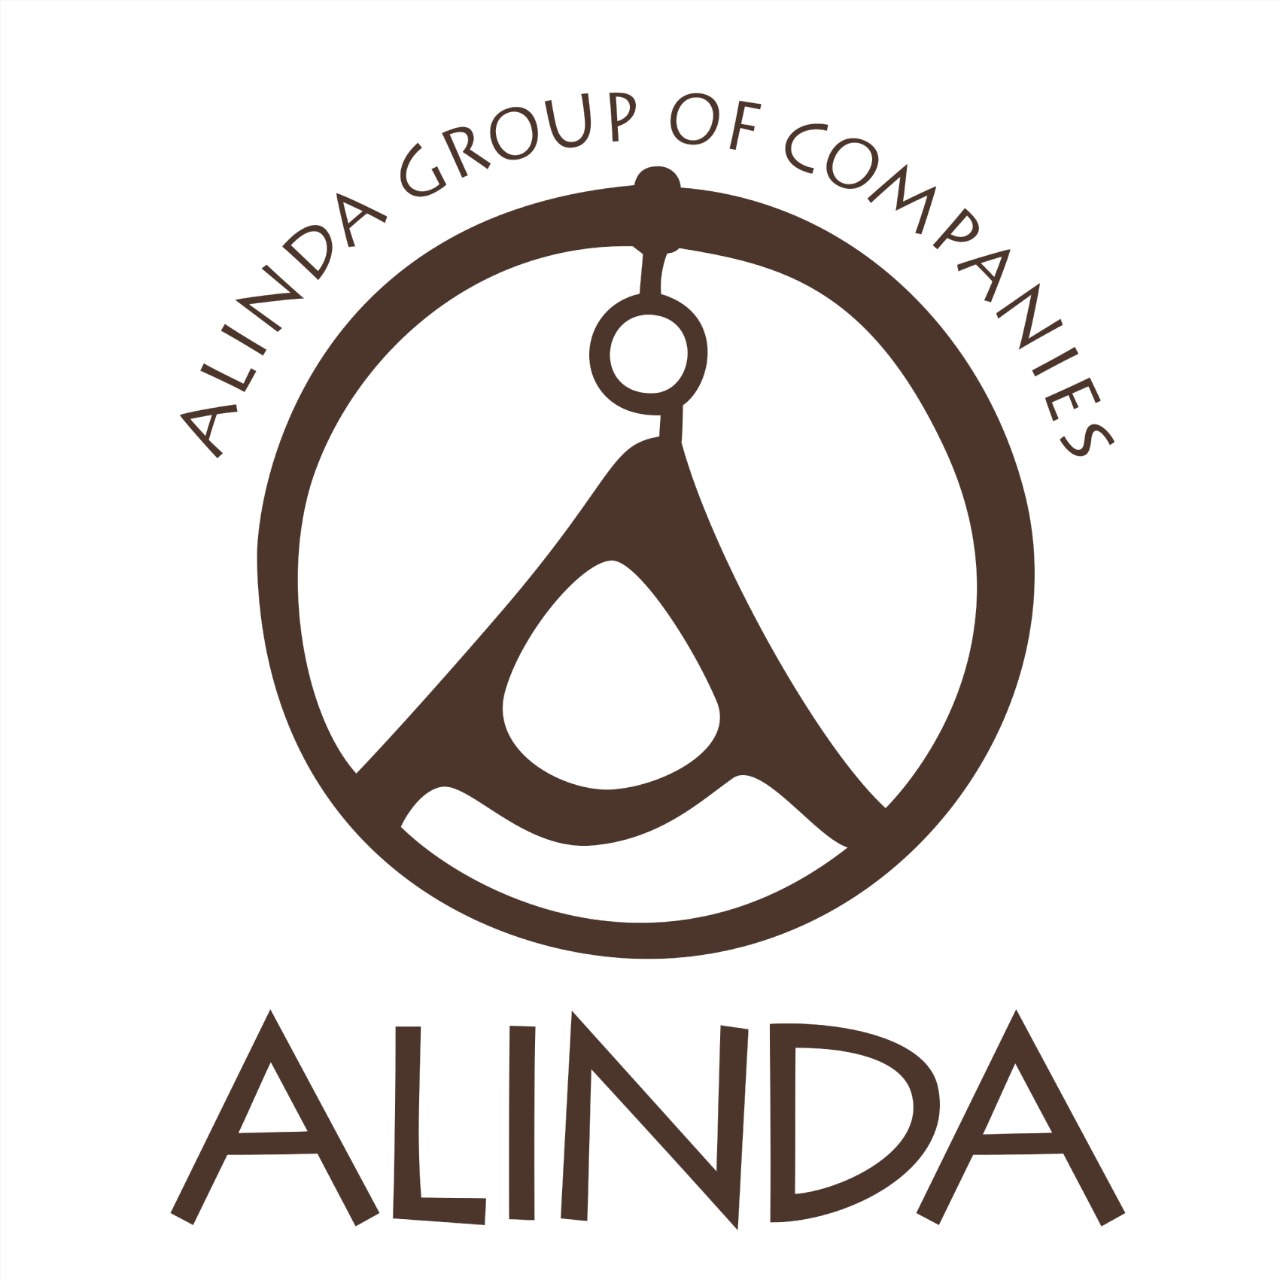 Alinda group of companies big